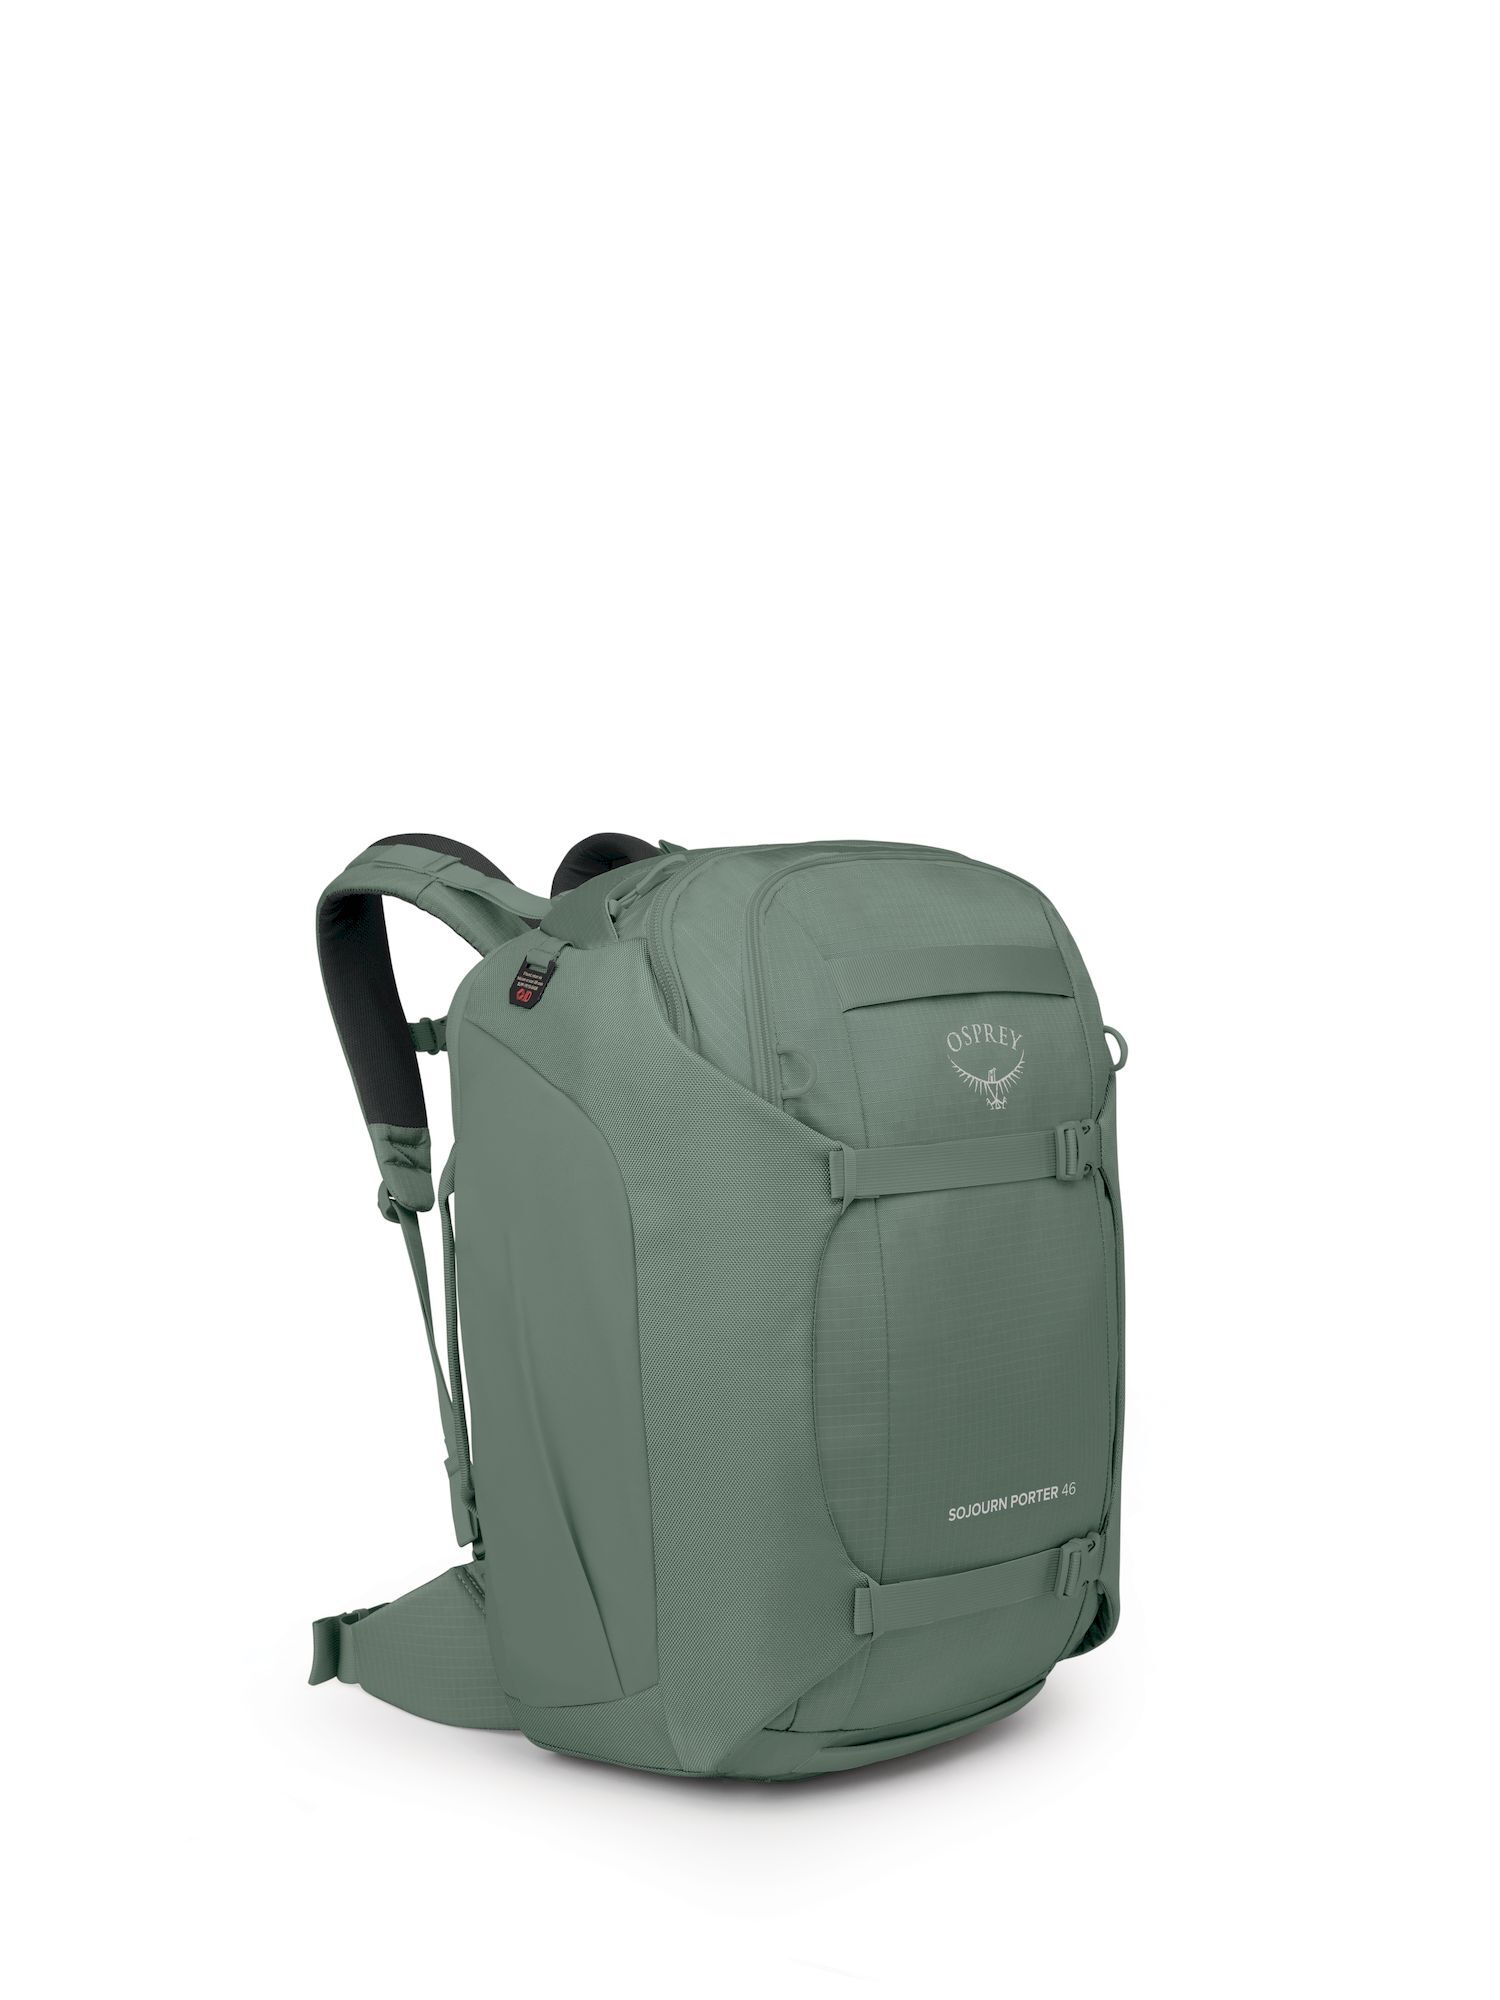 Osprey Sojourn Porter 46 - Travel backpack | Hardloop